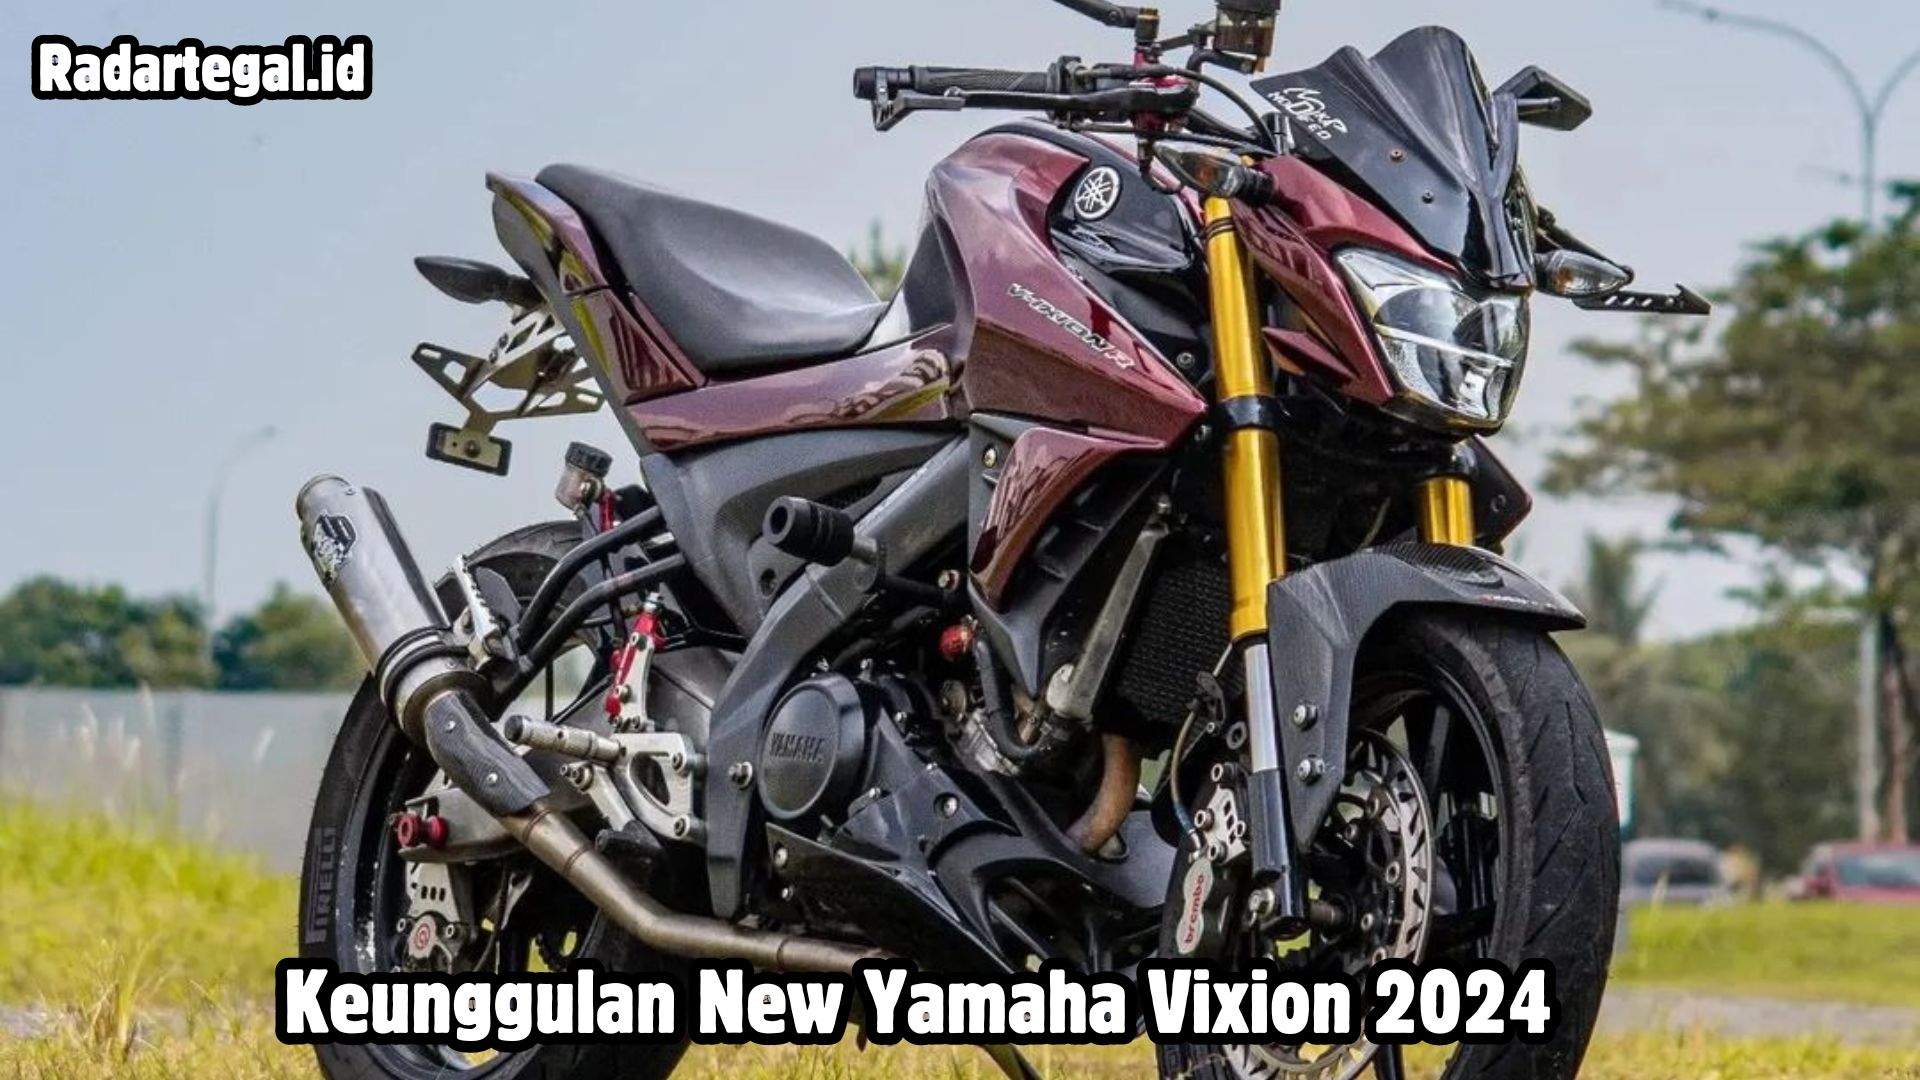 Keunggulan New Yamaha Vixion 2024, Motor Sport yang Siap Mengguncang Pasar dengan Desain Memukau